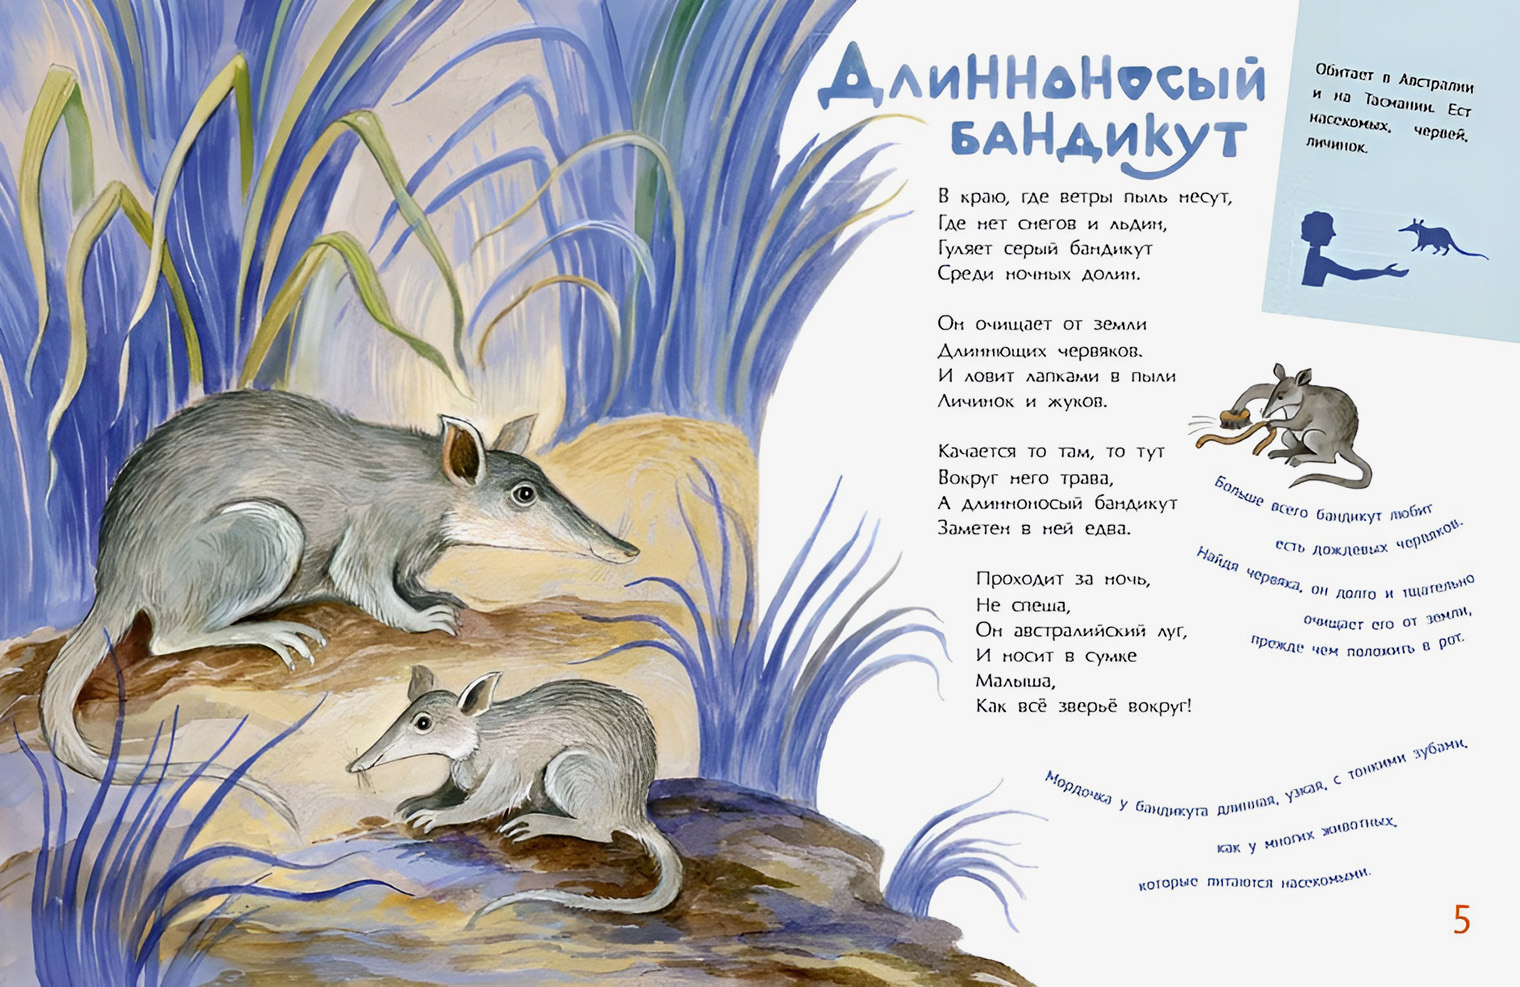 Автор книги Дарья Герасимова не только написала стихи и тексты в книге, но и нарисовала все иллюстрации